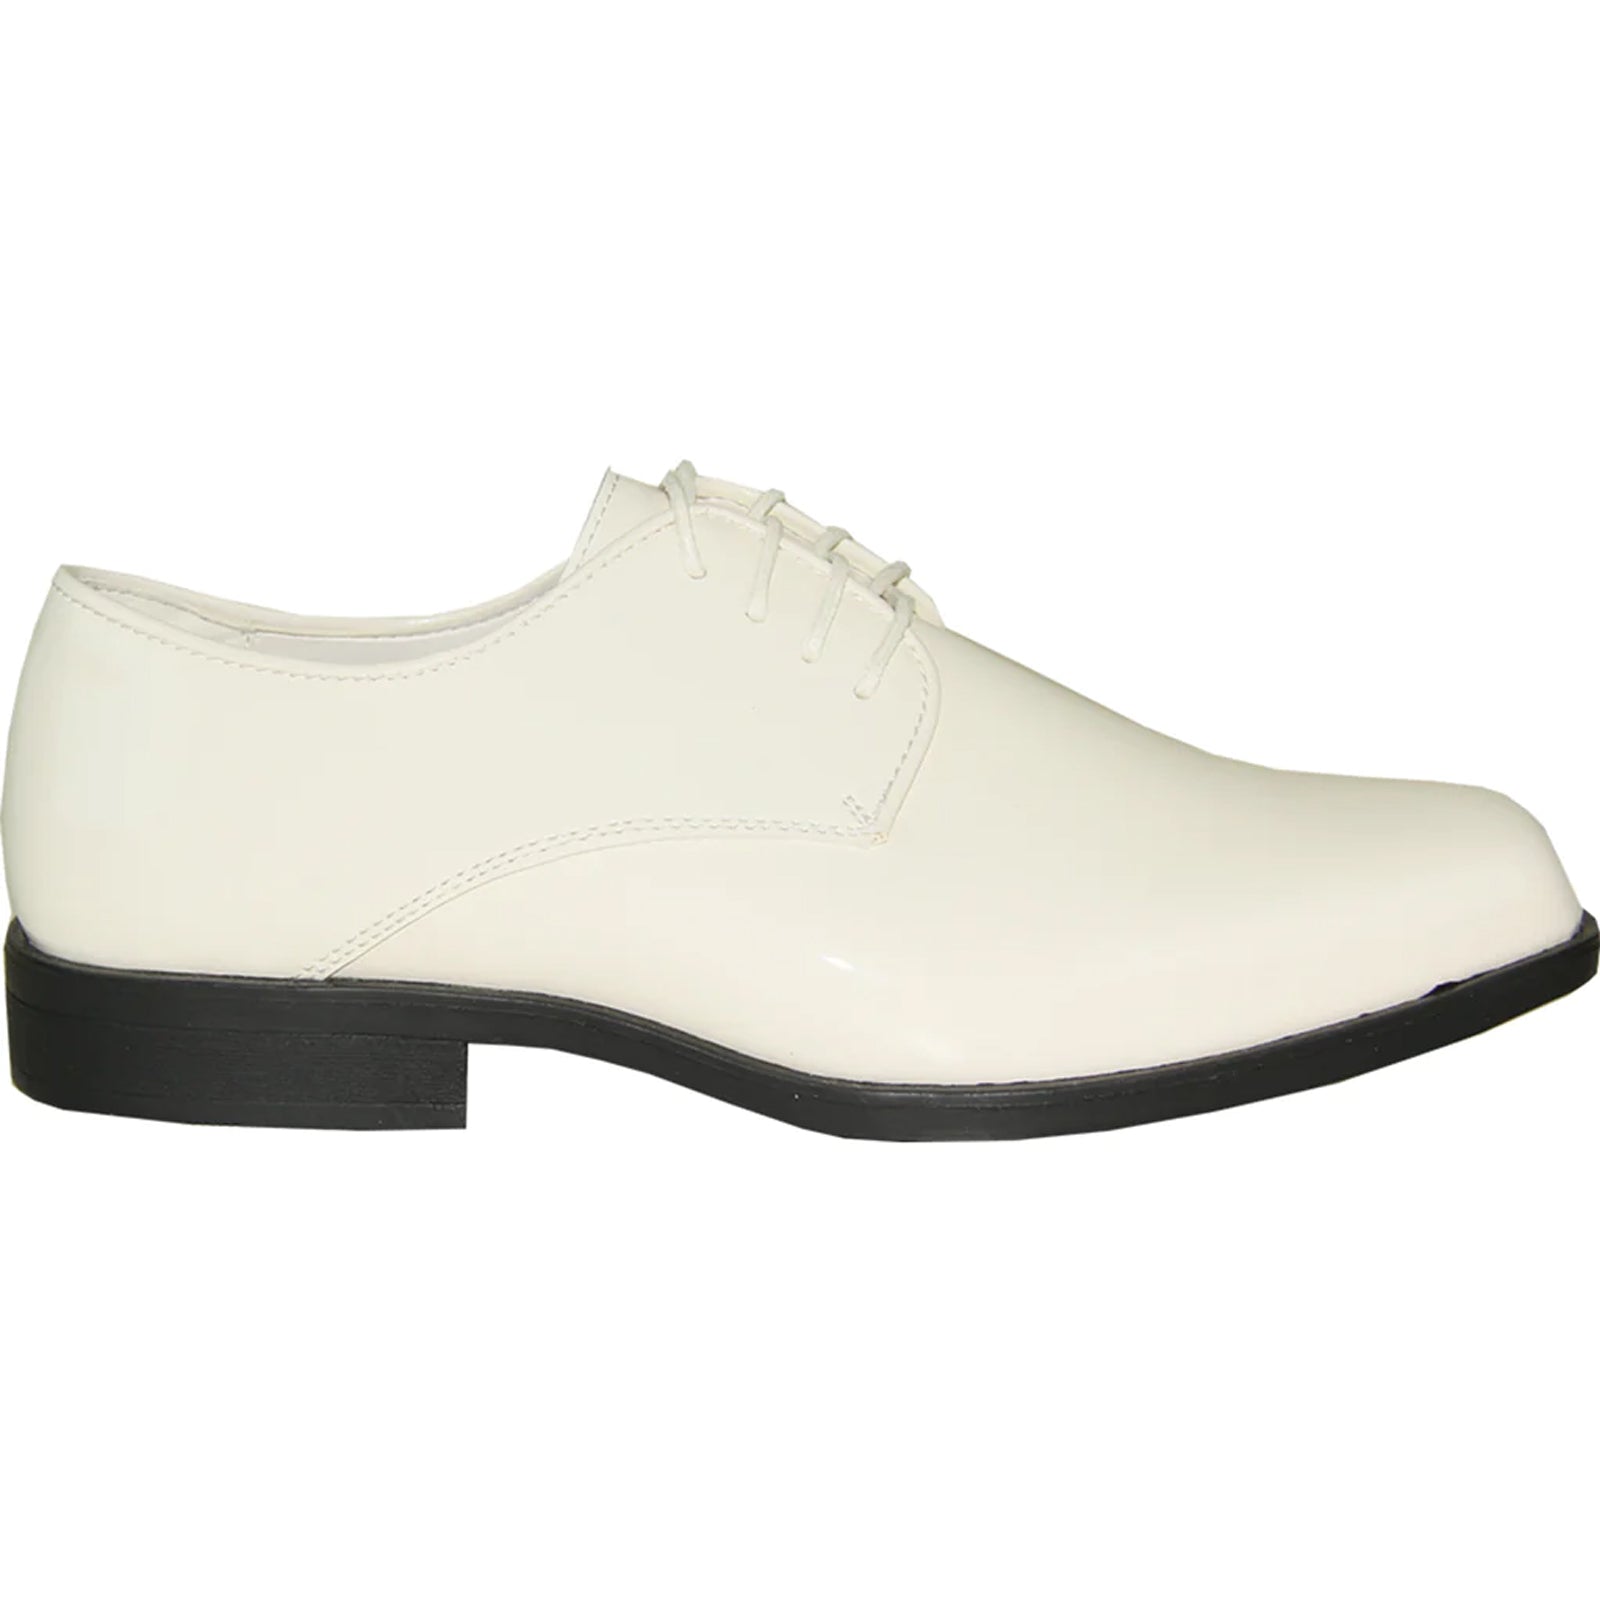 "Ivory Men's Classic Patent Tuxedo Dress Shoe - Square Toe"